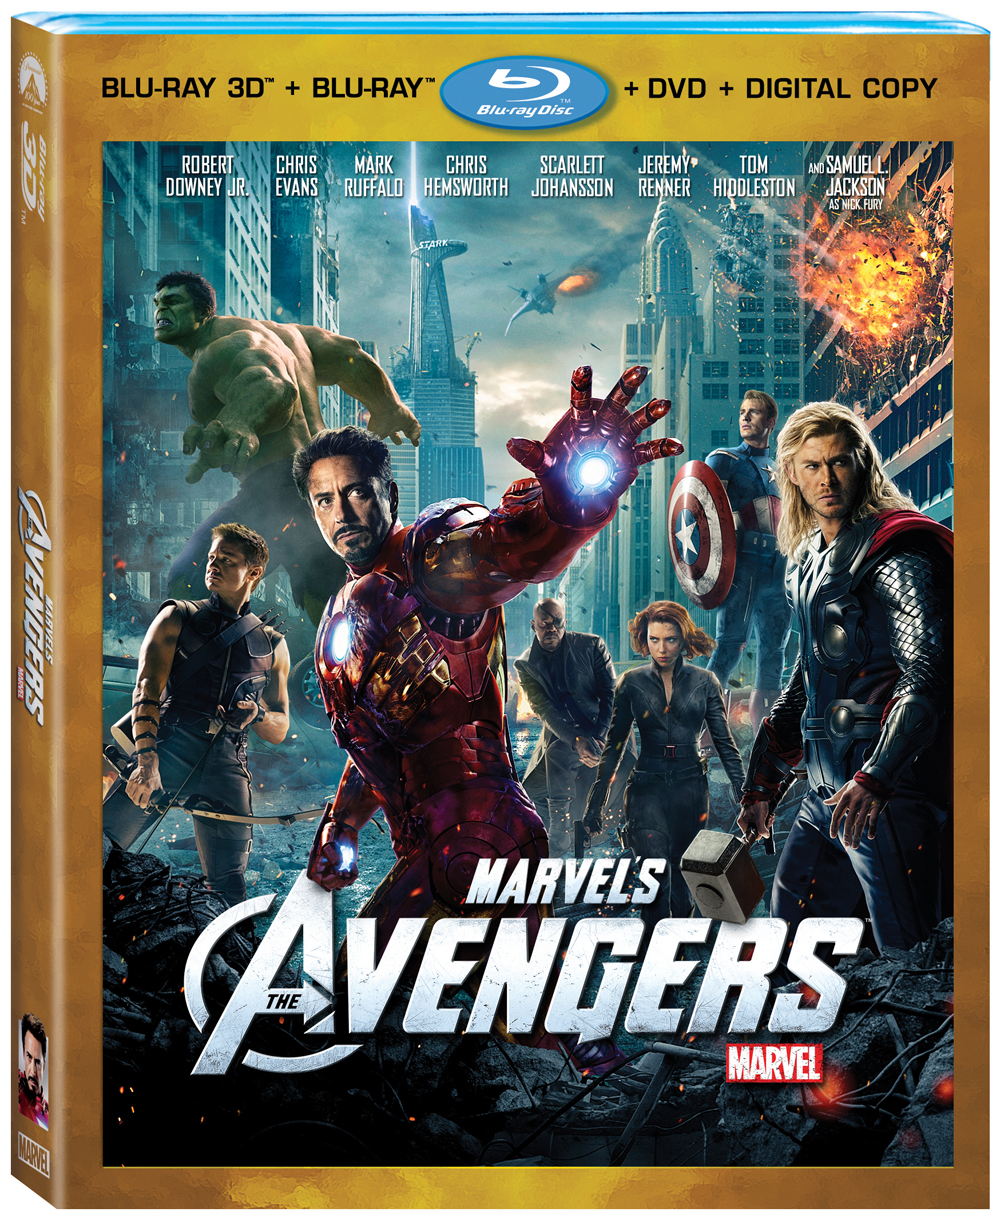 Avengers on Blu-Ray Combo Pack September 25TH